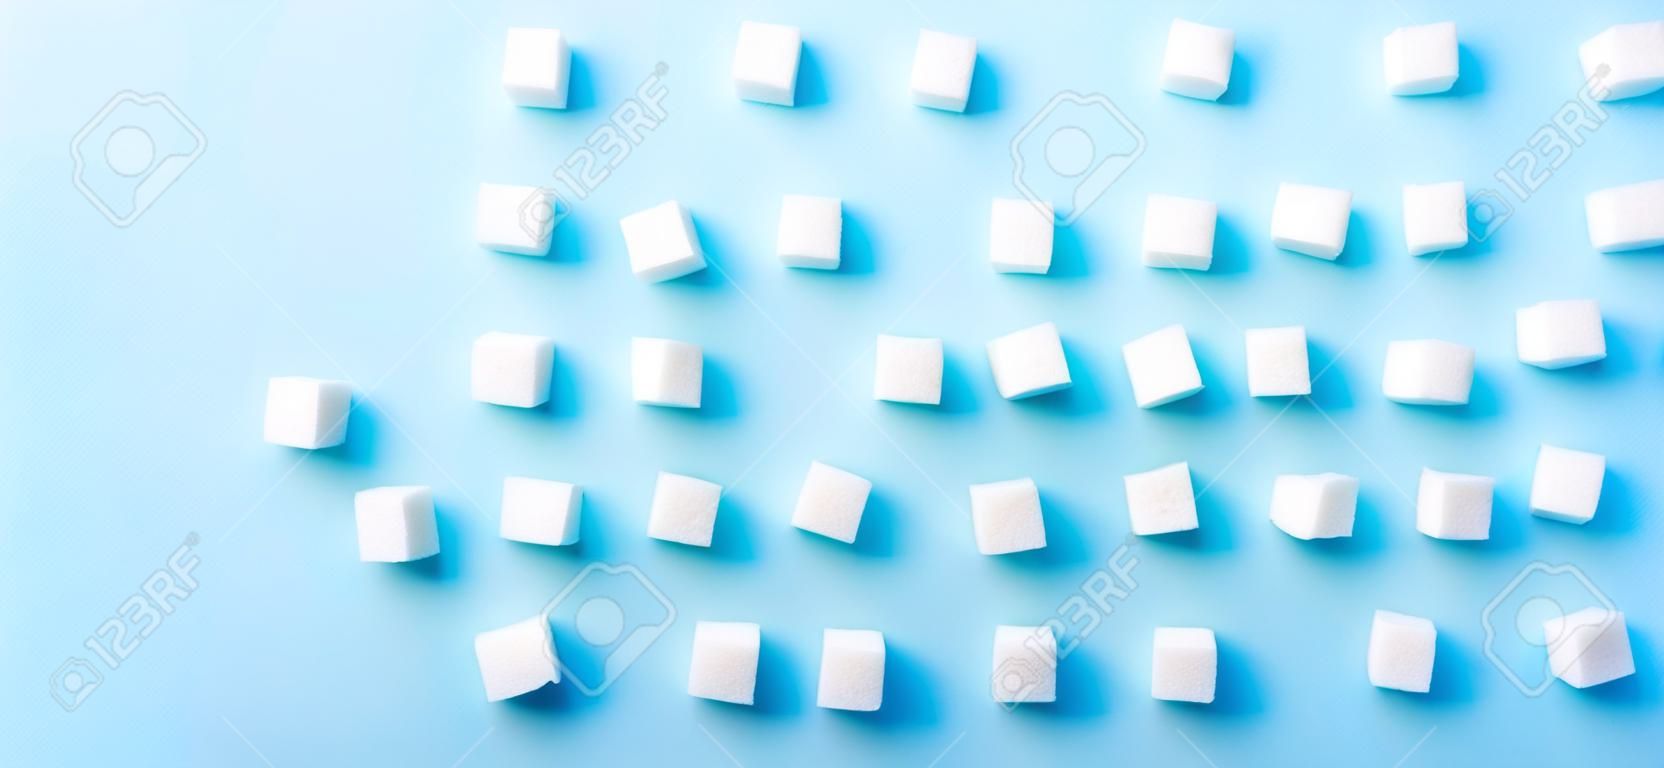 Modèle régulier de cubes de sucre sur fond bleu, bannière à plat avec espace de copie